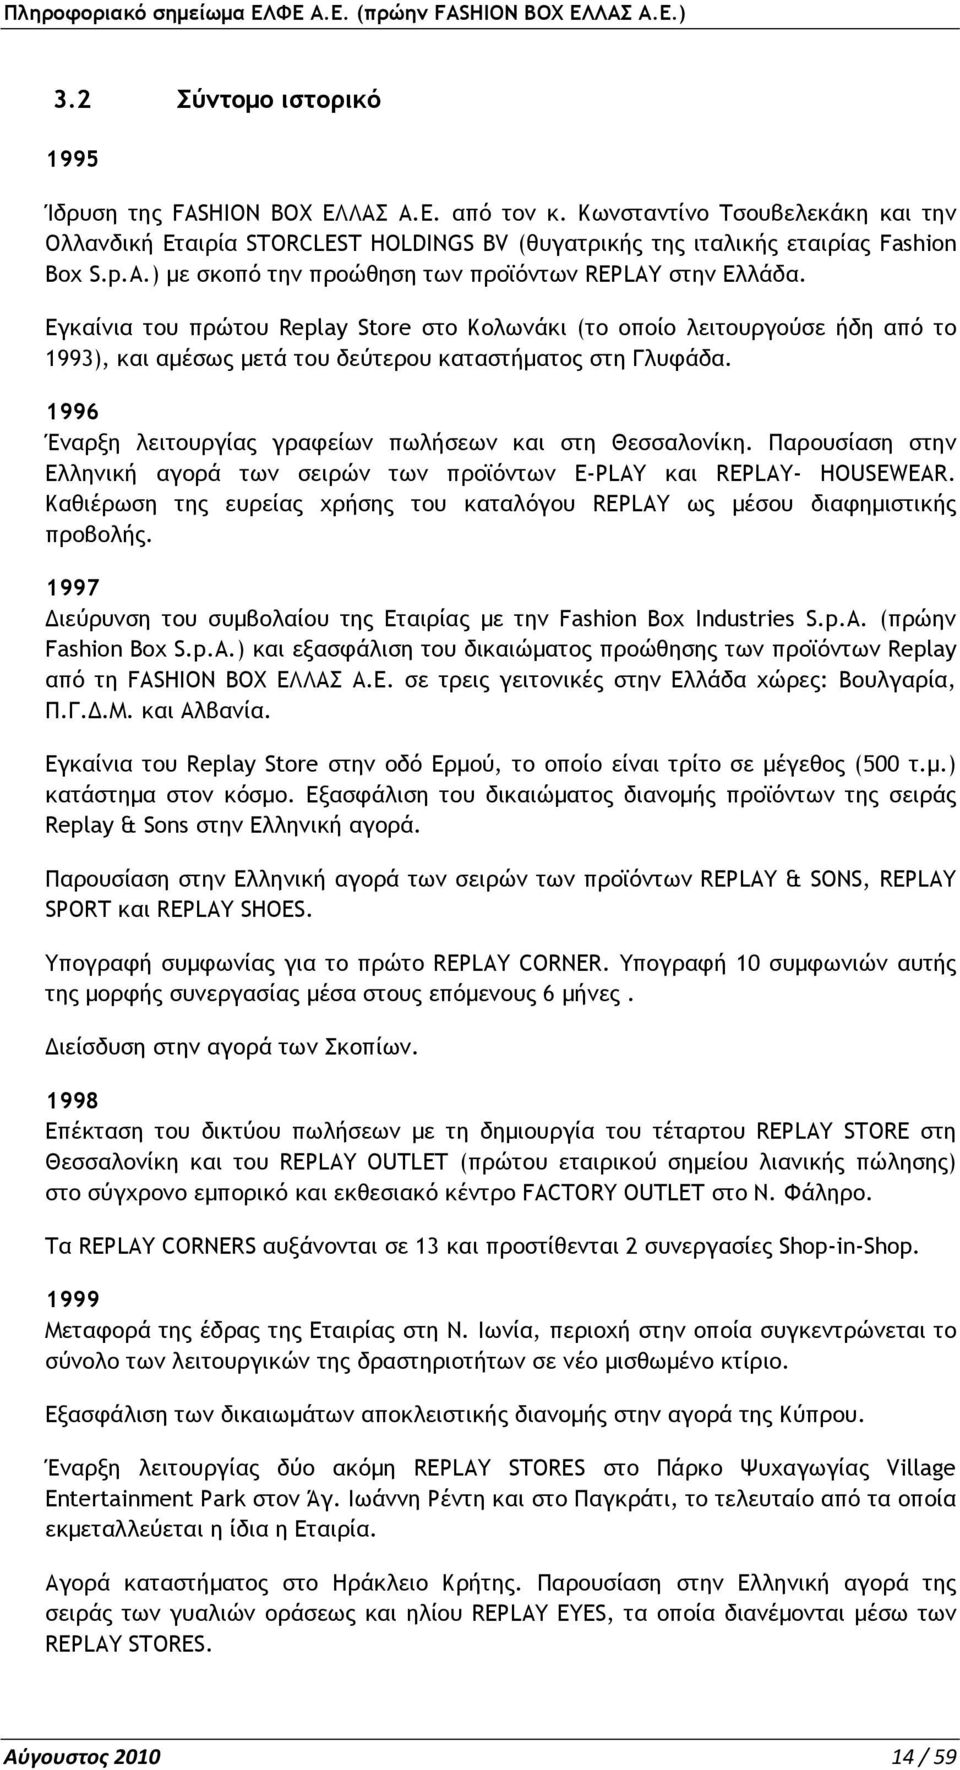 1996 Έναρξη λειτουργίας γραφείων πωλήσεων και στη Θεσσαλονίκη. Παρουσίαση στην Ελληνική αγορά των σειρών των προϊόντων E-PLAY και REPLAY- ΗOUSEWEAR.